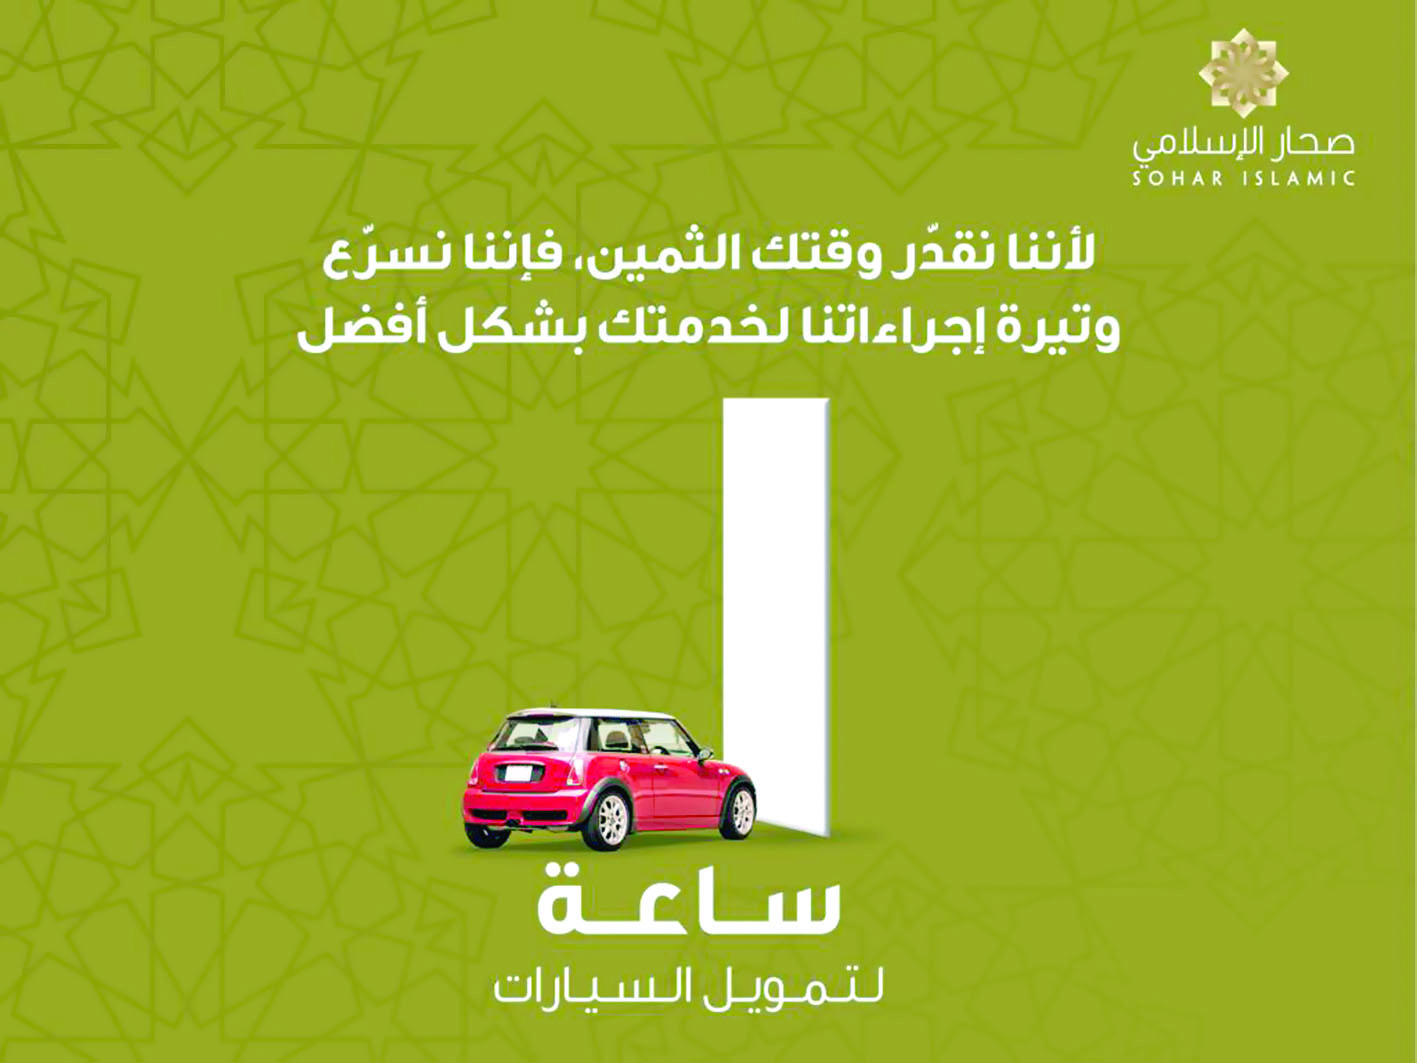 لتعزيز تجربة الزبائن وتلبية احتياجاتهم صحار الإسلامي يقدم خدمة تمويل السيارات خلال ساعة واحدة